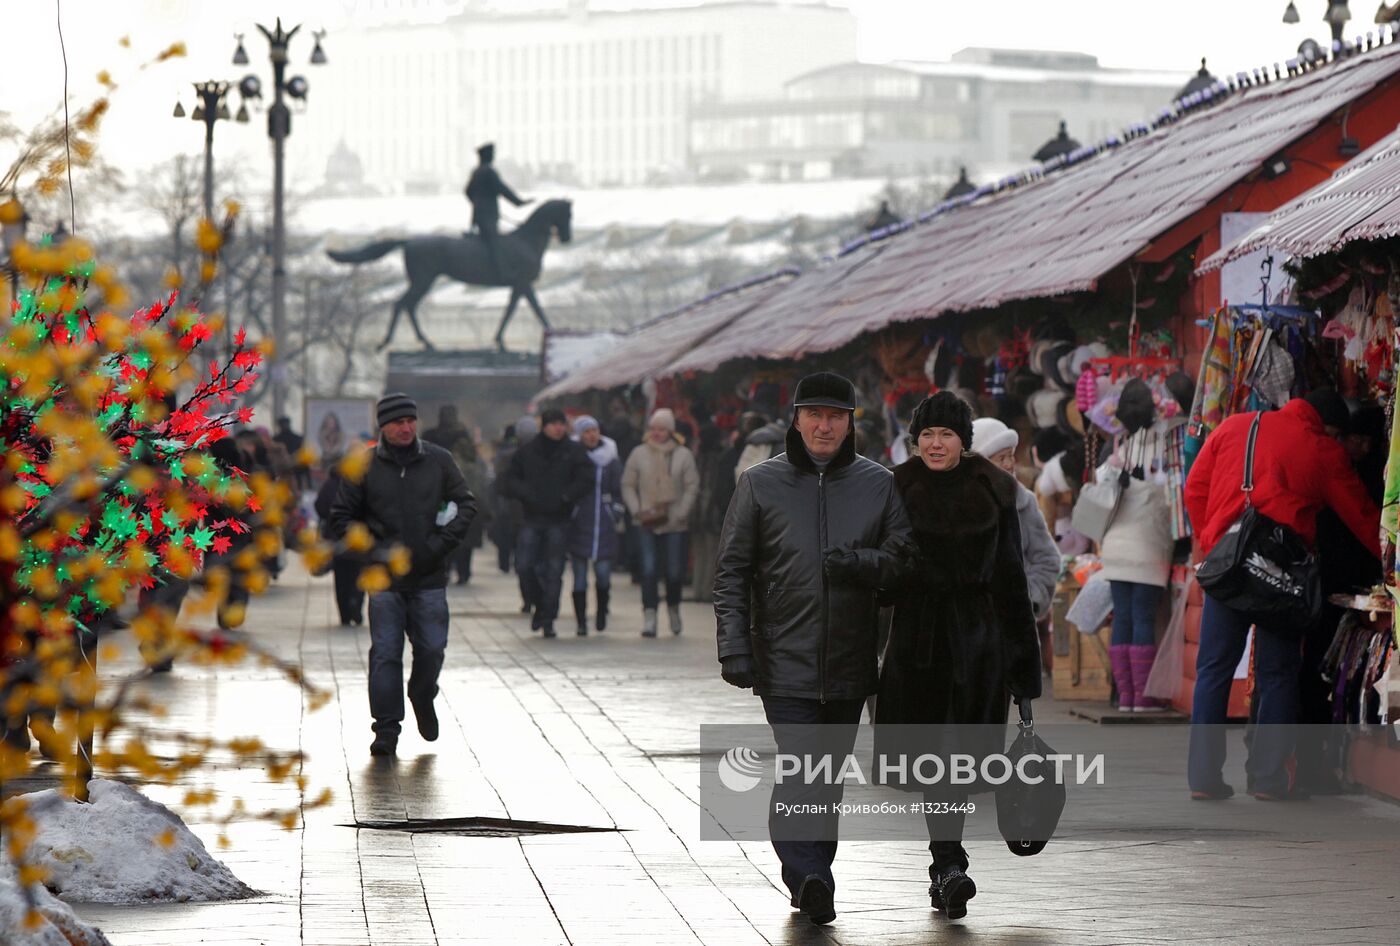 Продажа сувениров на Площади Революции в Москве